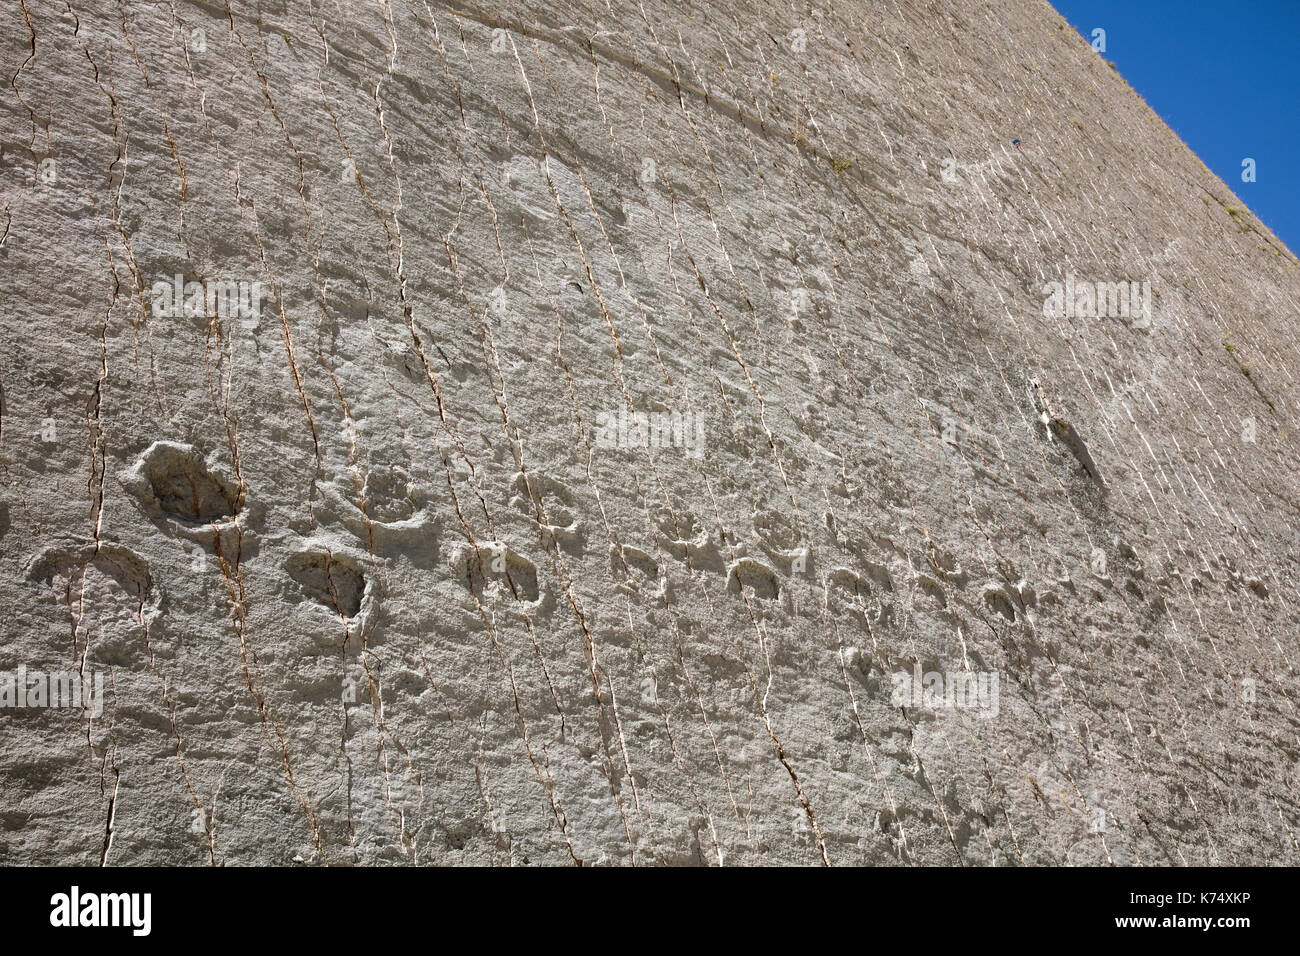 Impronte di dinosauro dal tardo Cretaceo / Maastrichtiano nella scogliera di Cal Orck’o nel Parque Cretácico / Cretaceo Park, Sucre, Bolivia Foto Stock